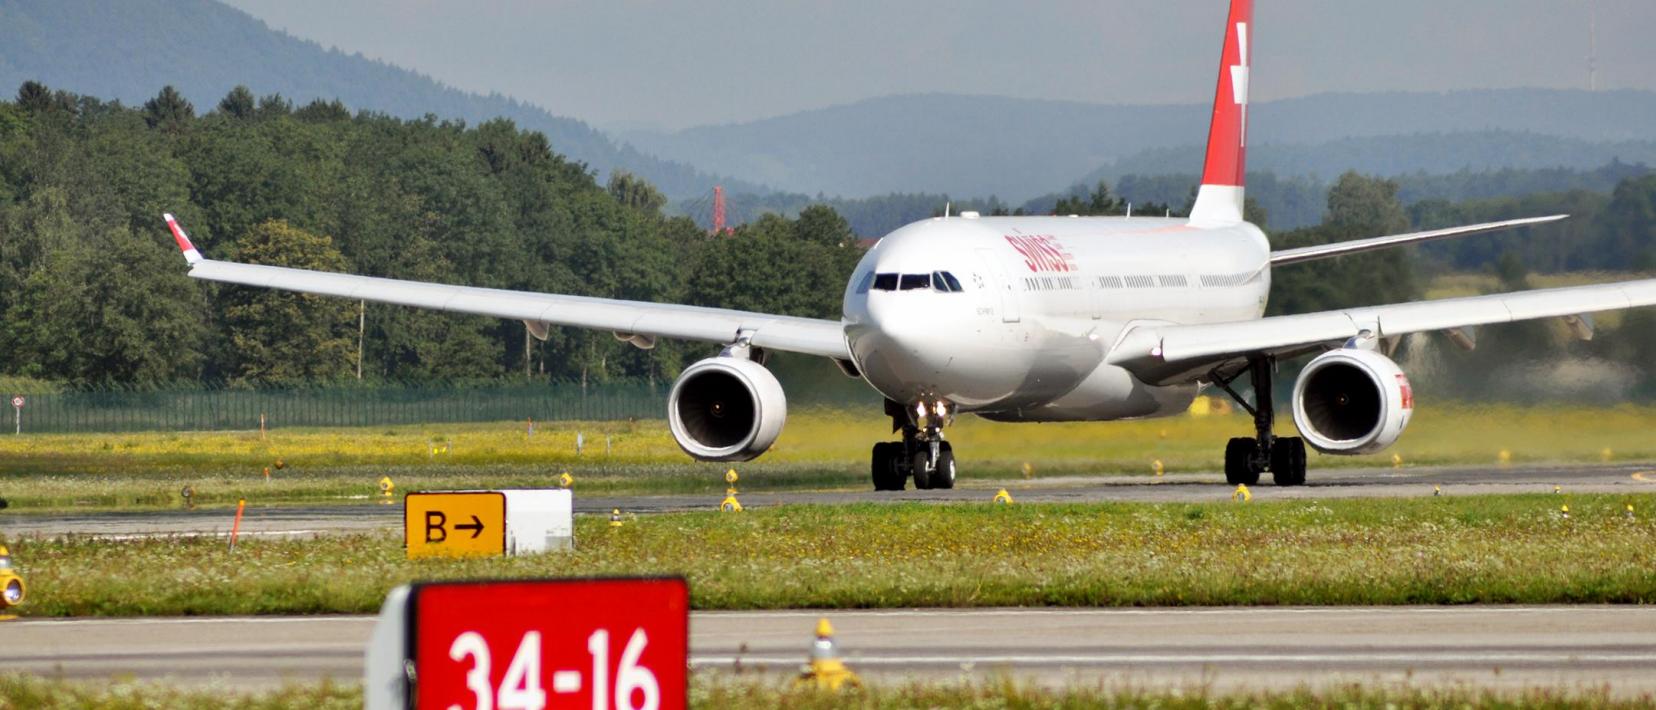 Das Bild zeigt ein Flugzeug der Swiss am Flughafen Zürich mit Wald im Hintergrund.